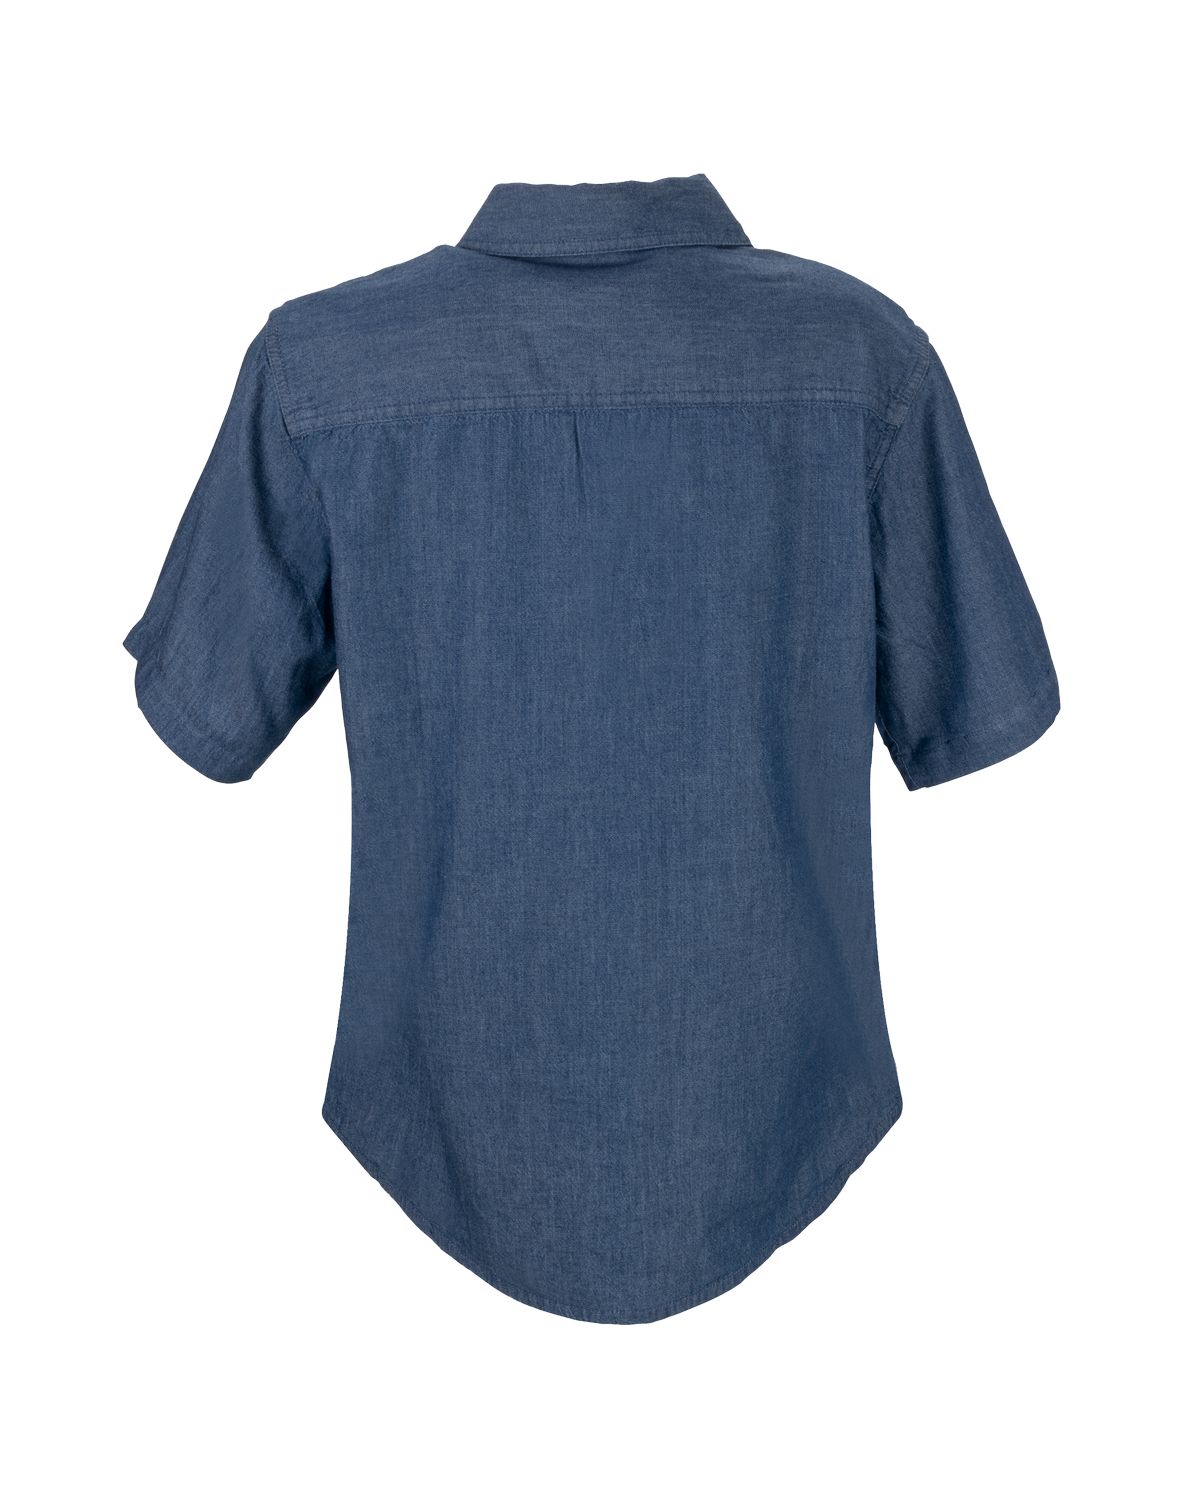 'Vantage 1978S Women's Short-Sleeve Hudson Denim Shirt'